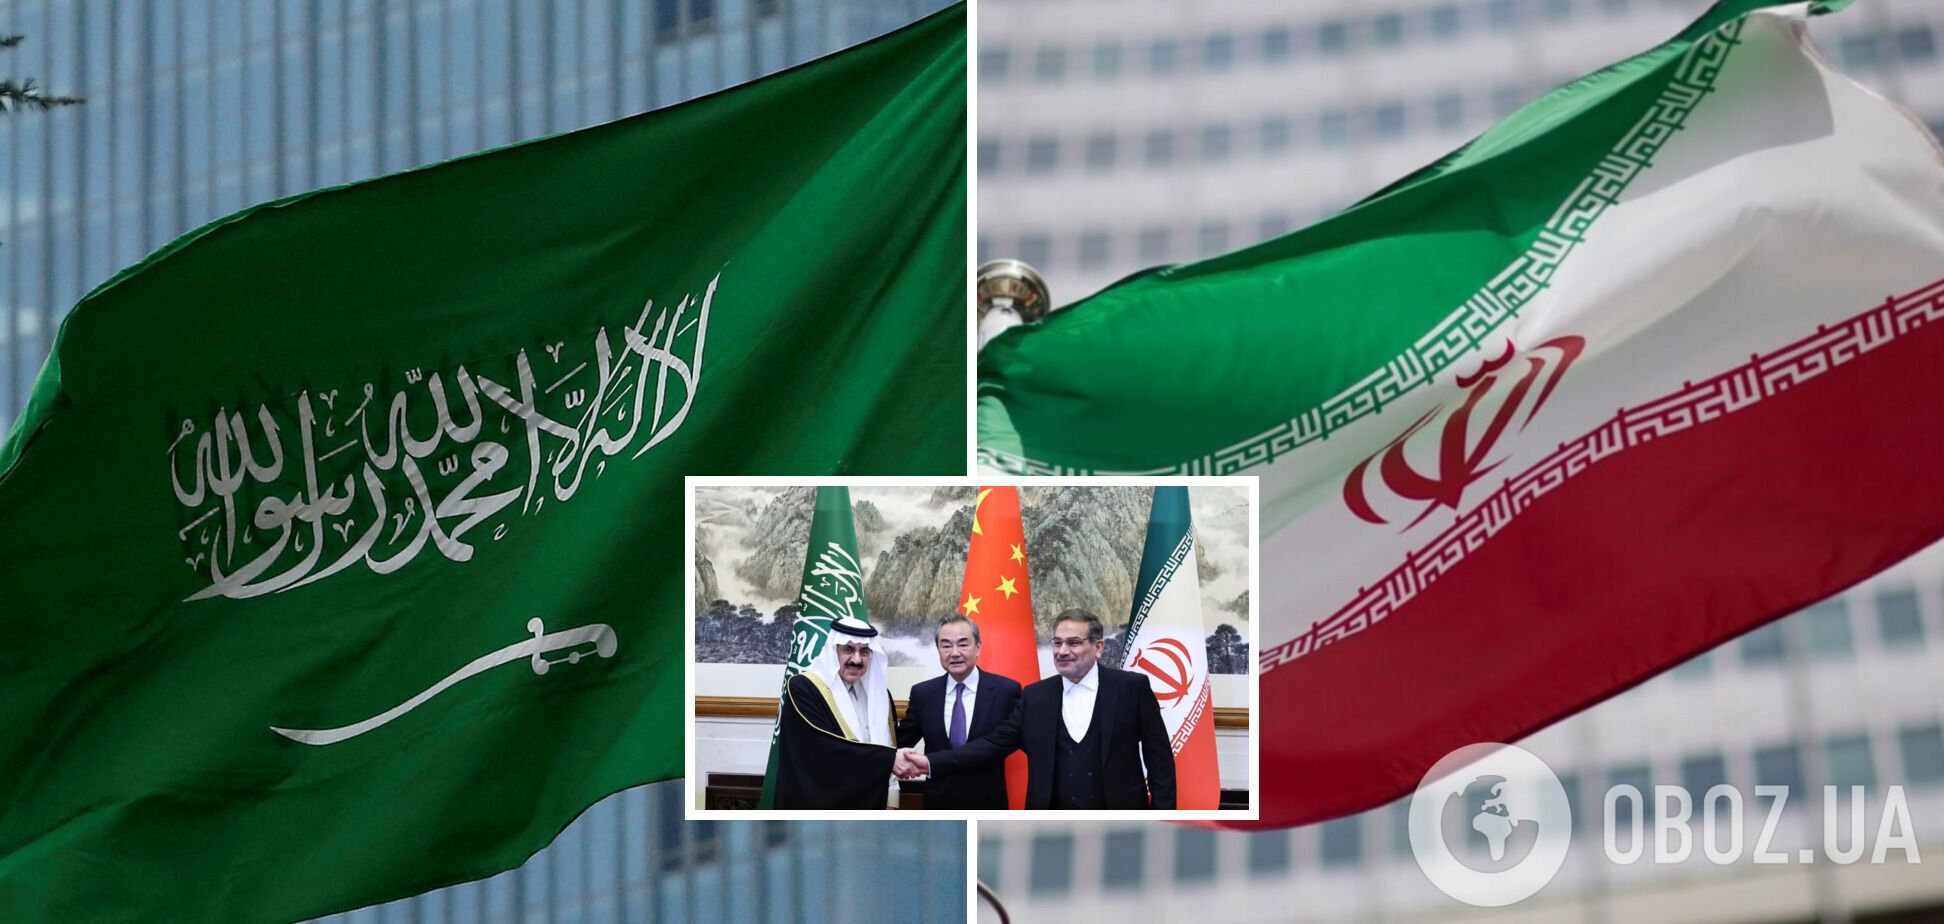 Иран и Саудовская Аравия согласились возобновить дипломатические отношения при посредничестве Китая.